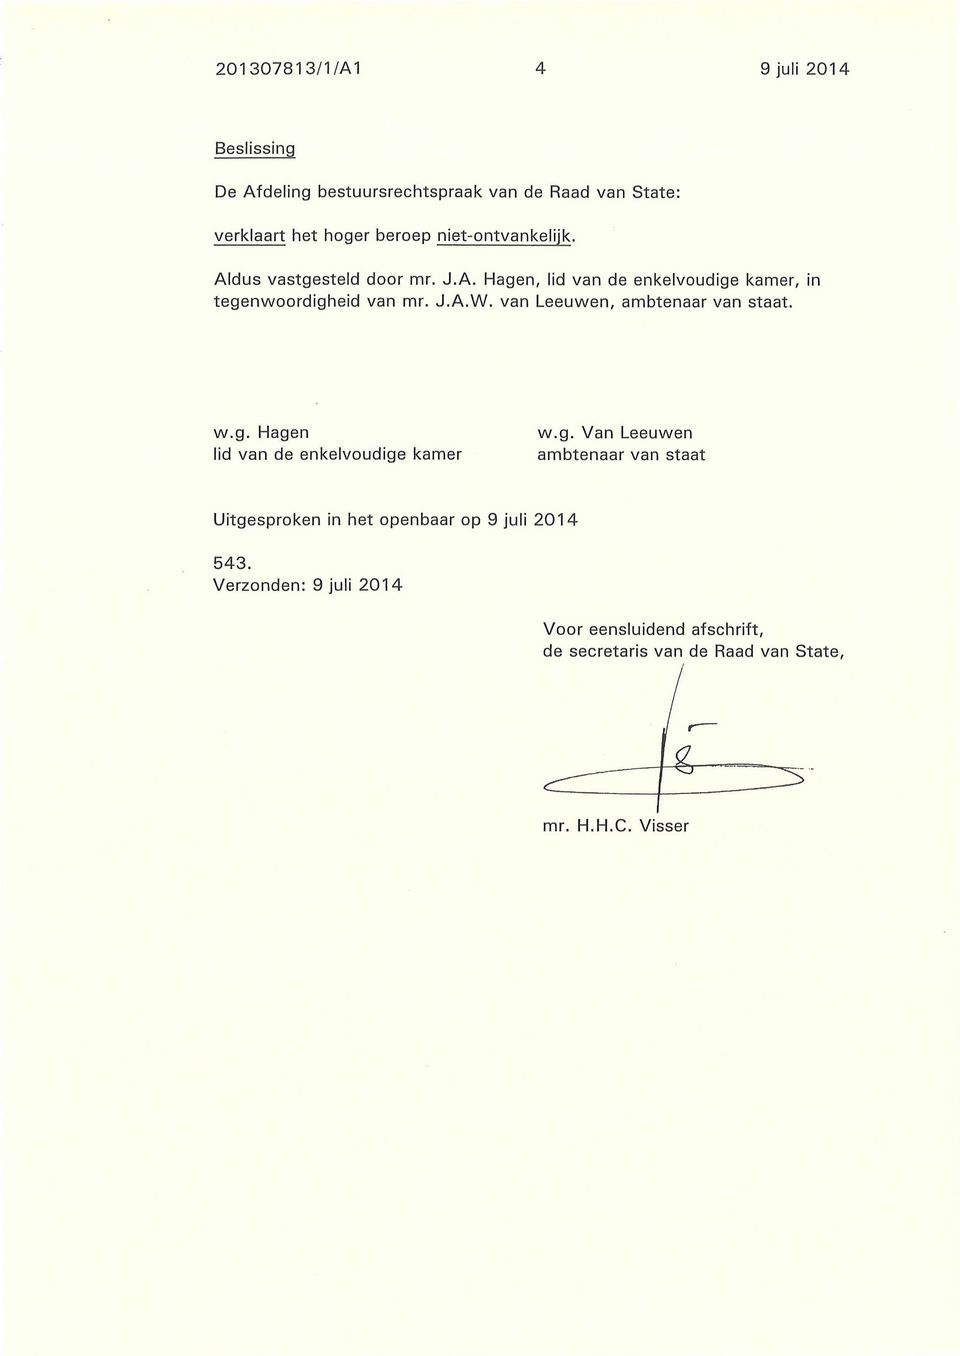 van Leeuwen, ambtenaar van staat. w.g. Hagen lid van de enkelvoudige kamer w.g. Van Leeuwen ambtenaar van staat Uitgesproken in het openbaar op 9 juli 2014 543.